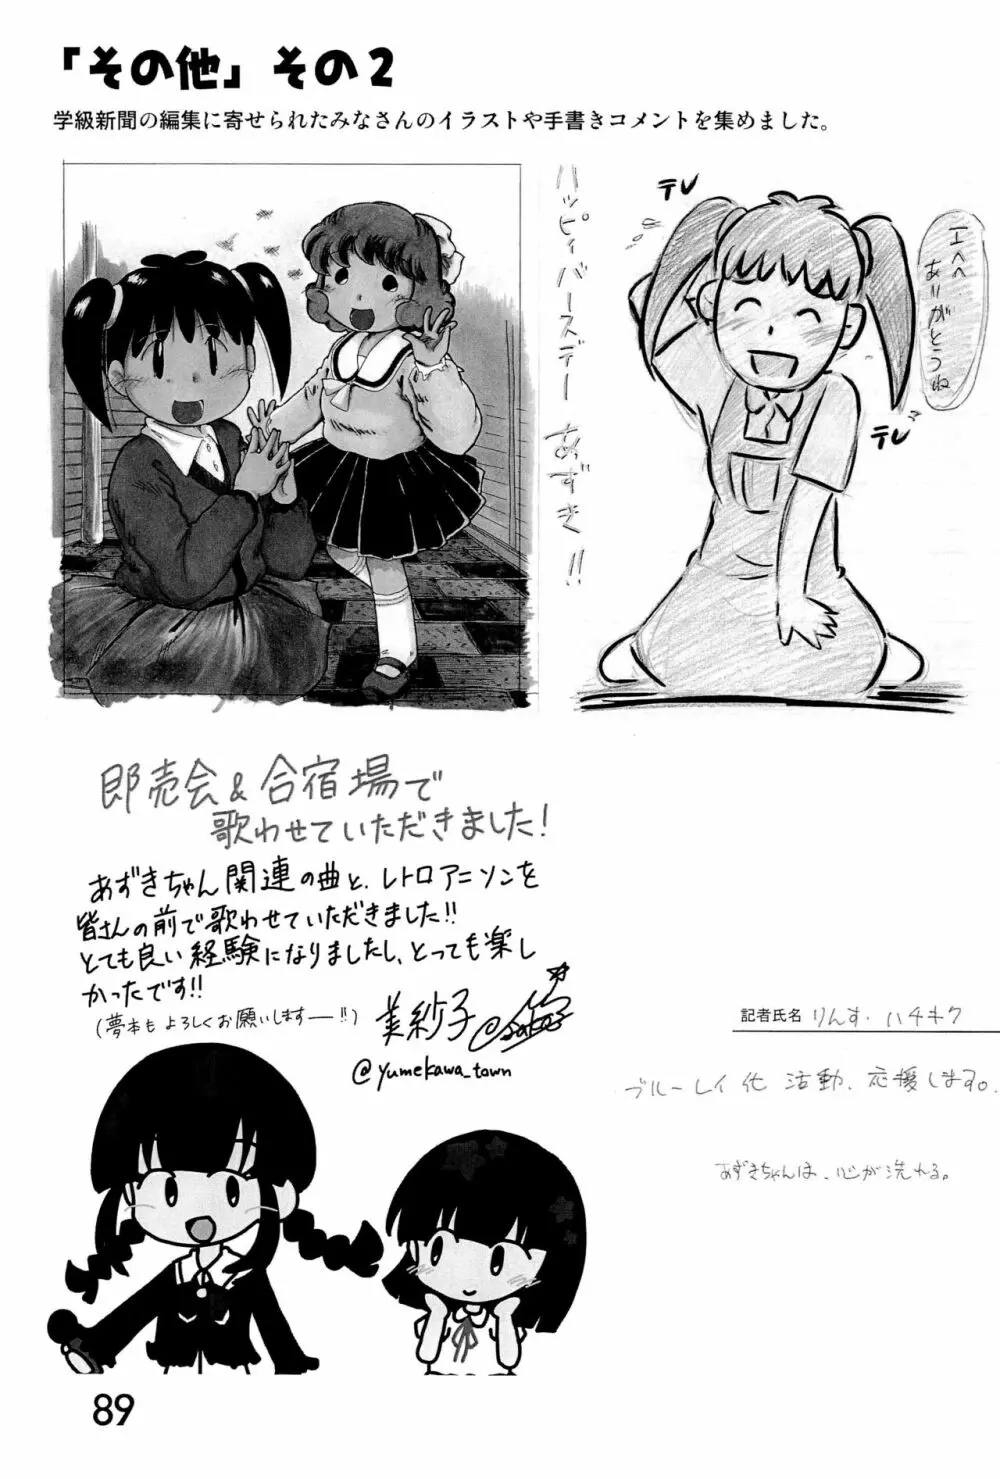 みなみ小学校学級新聞2018+号外版 89ページ